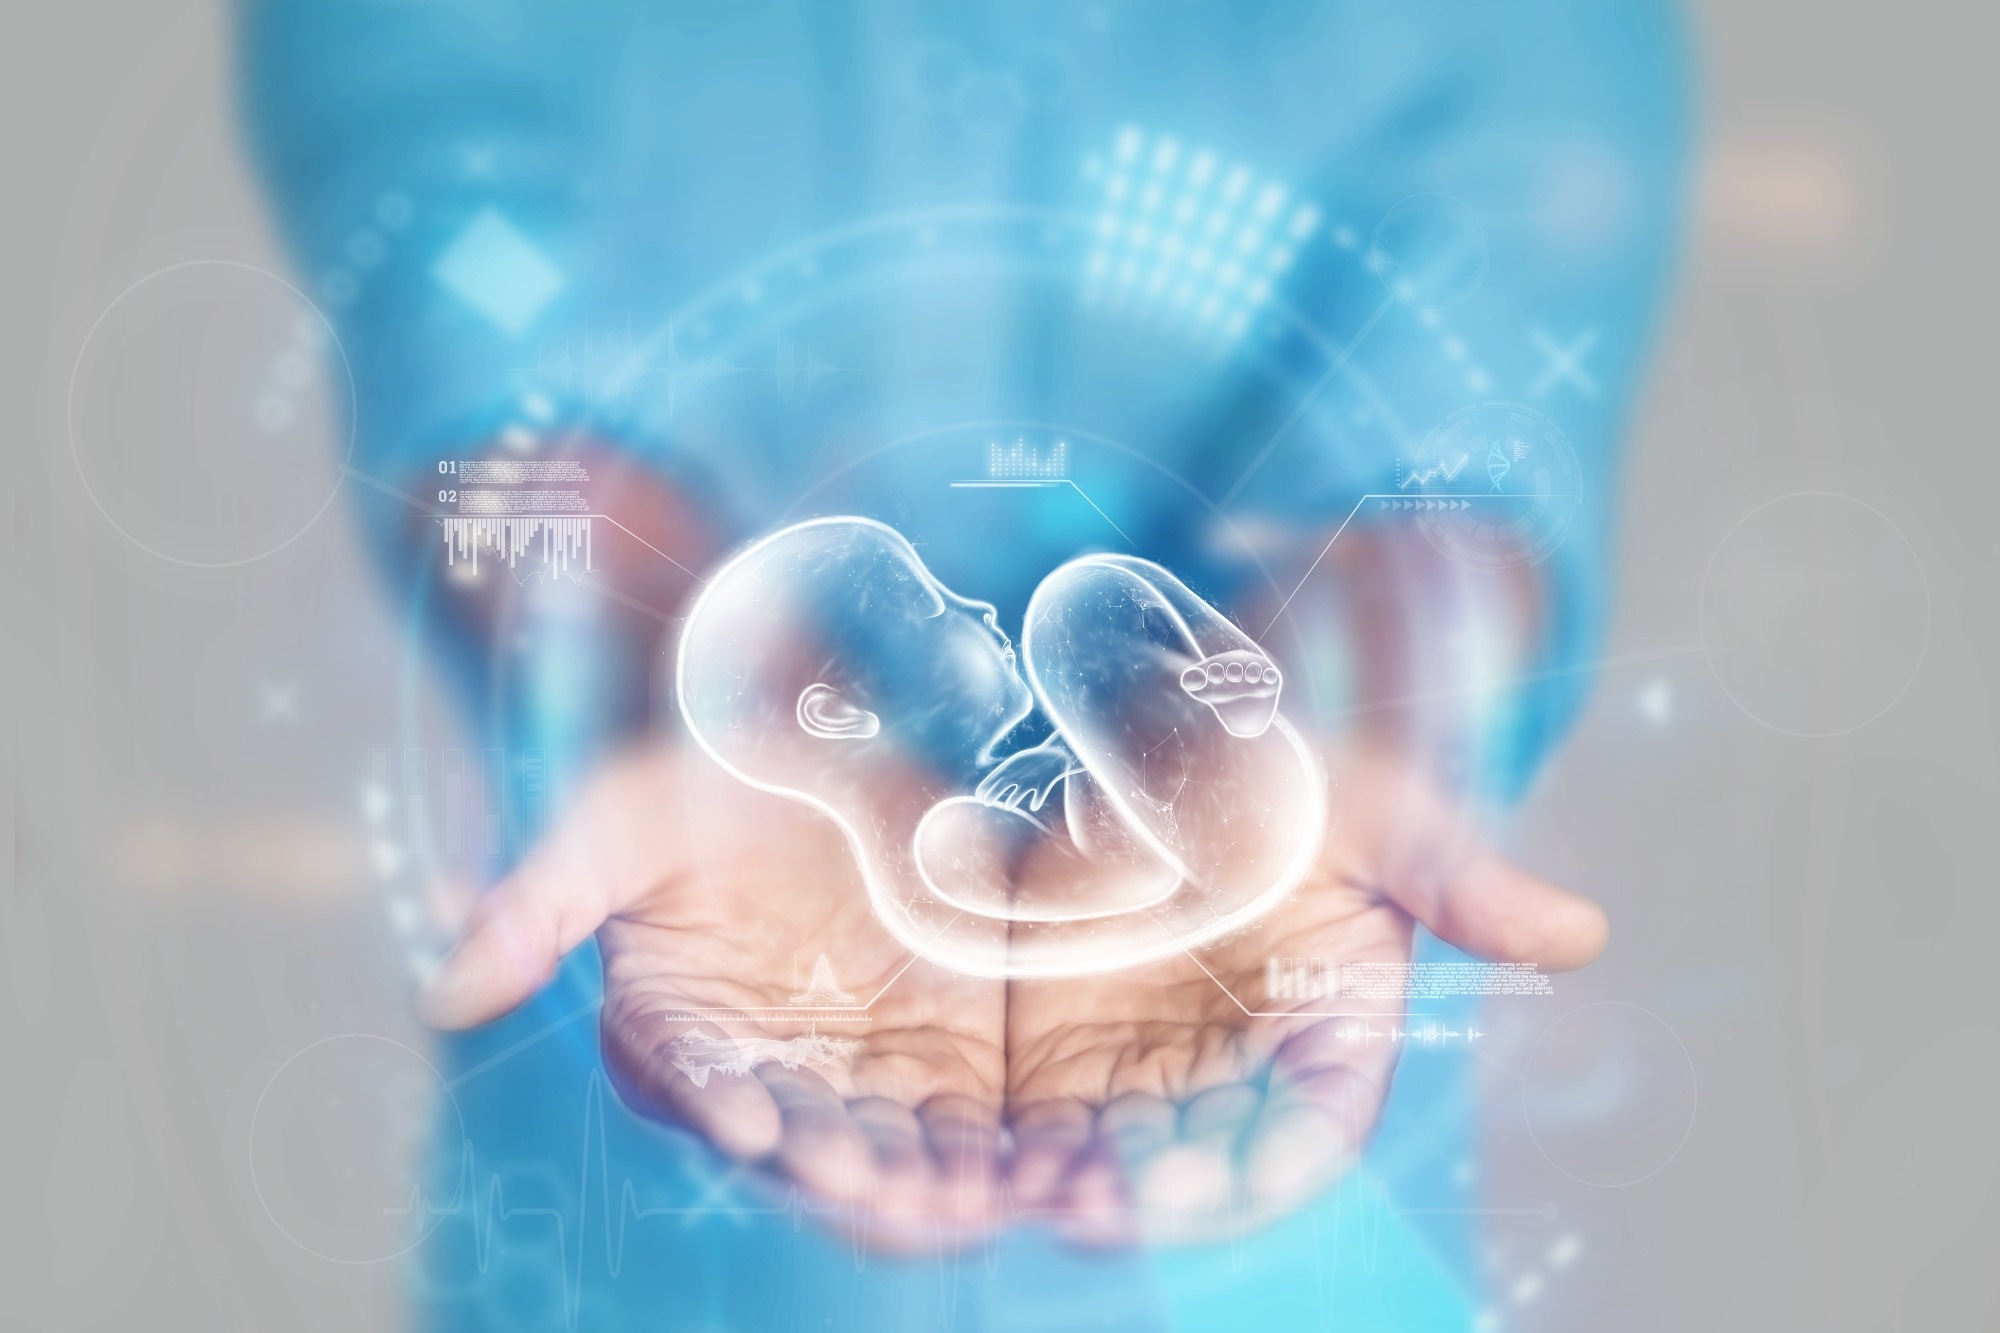 Los modelos de embriones humanos post-implantación son prometedores para desentrañar el desarrollo temprano